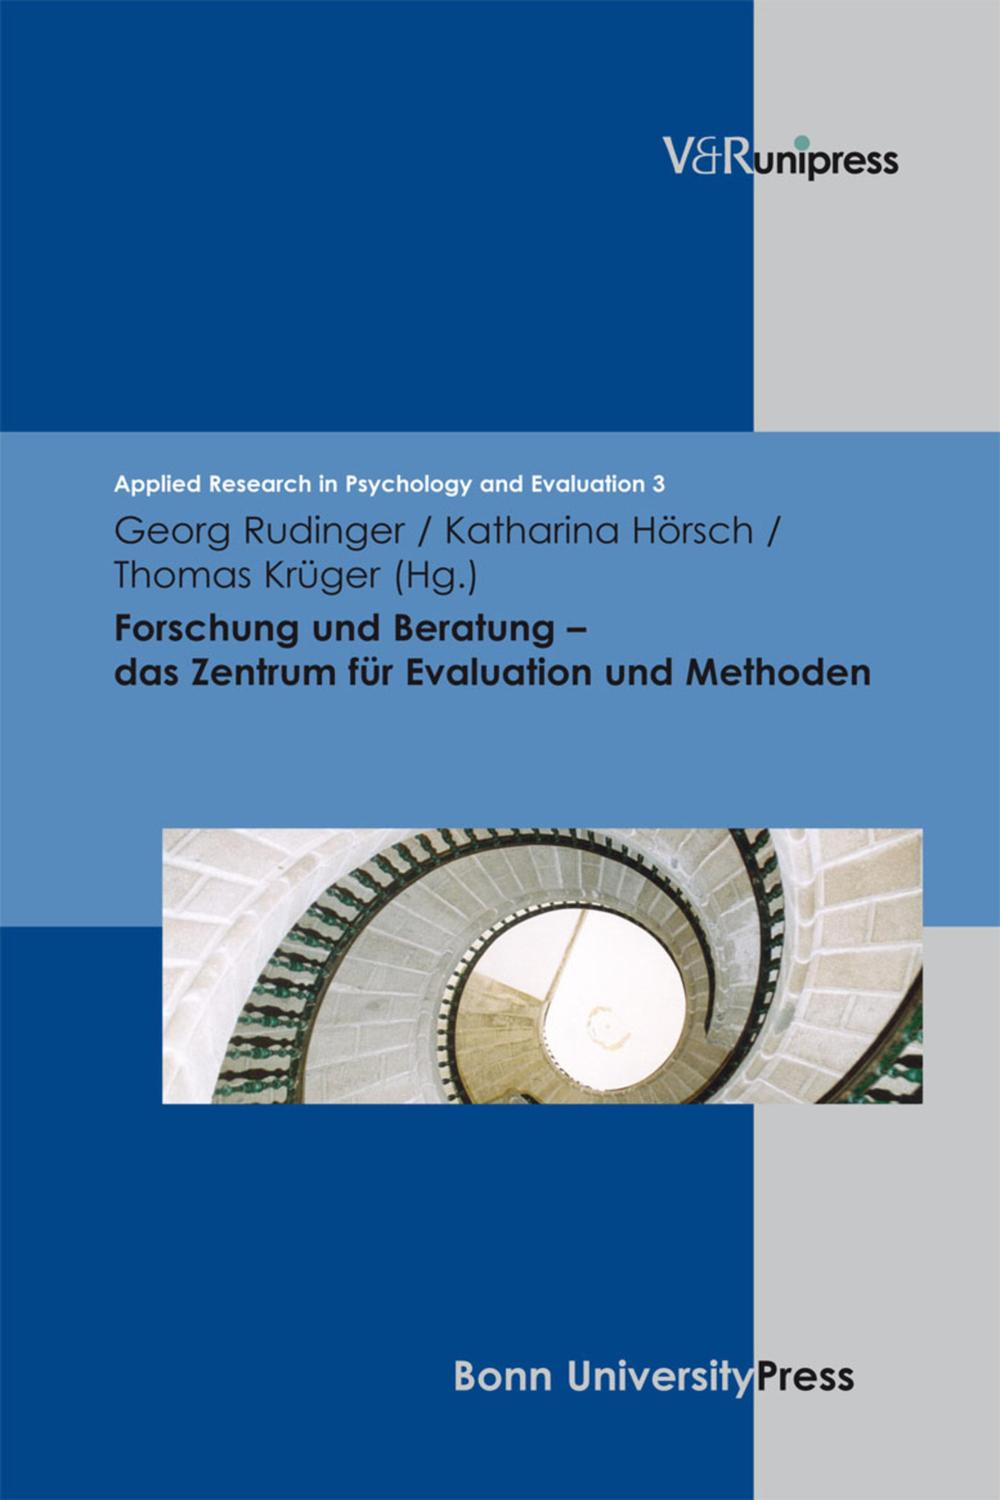 Forschung und Beratung – Das Zentrum für Evaluation und Methoden - Georg Rudinger, Katharina Olejniczak, Thomas Krüger